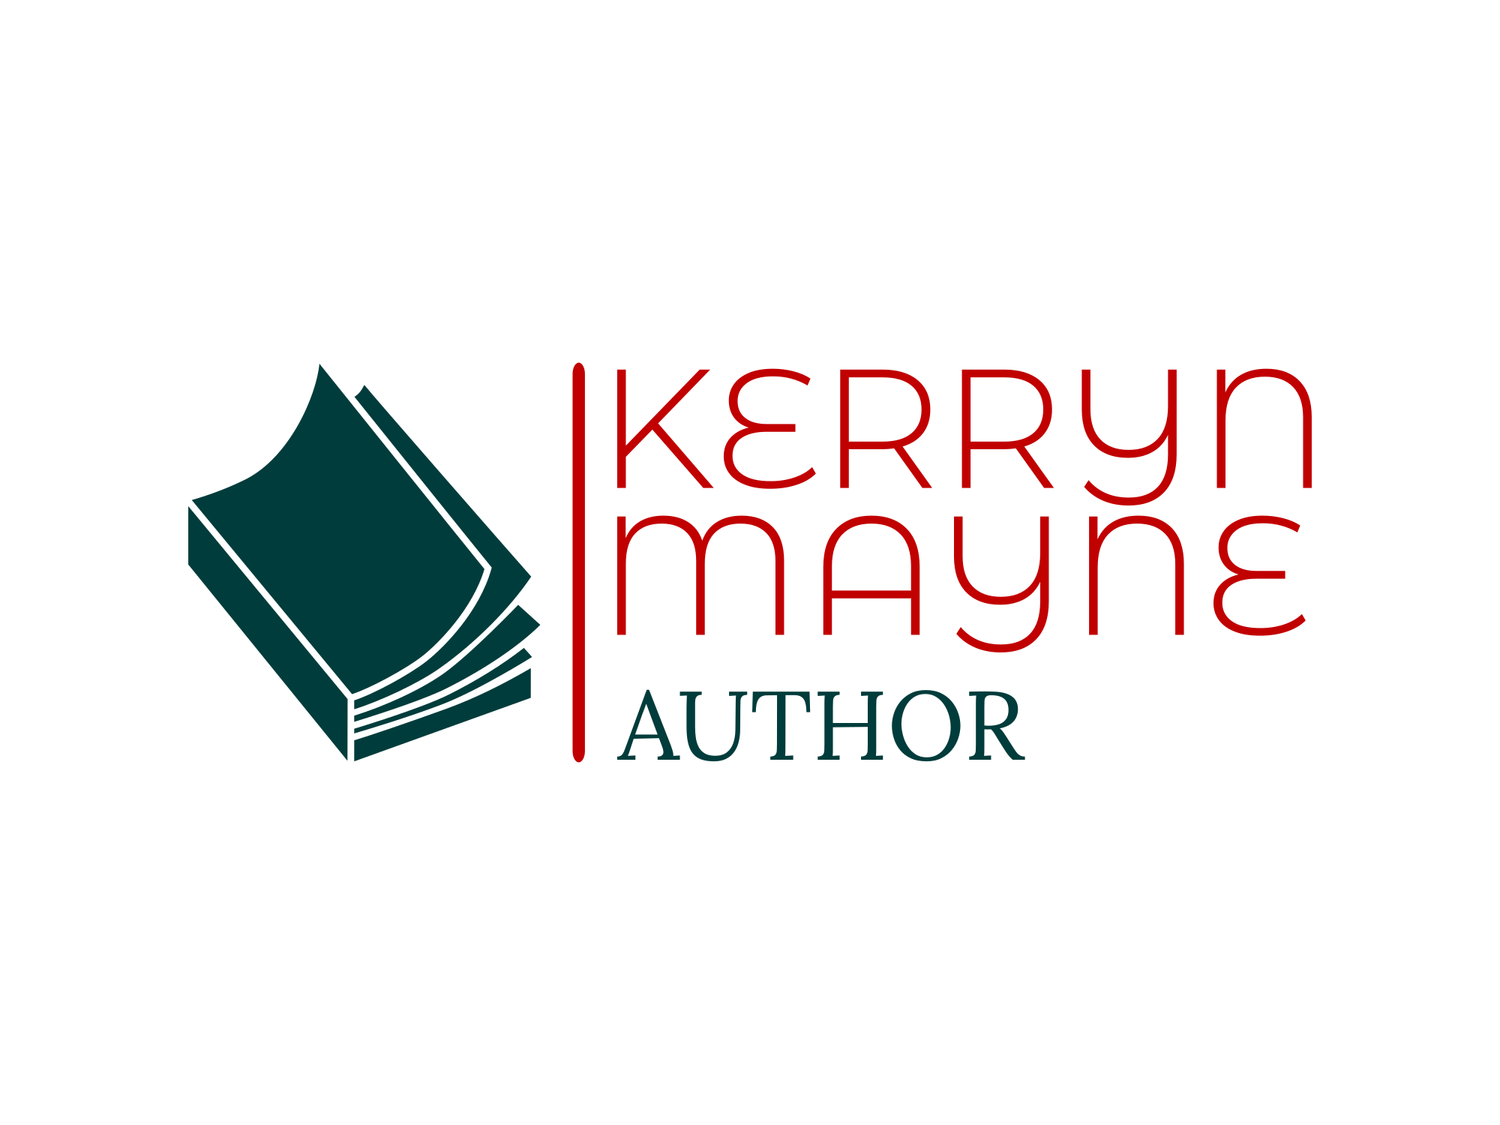 Kerryn Mayne 